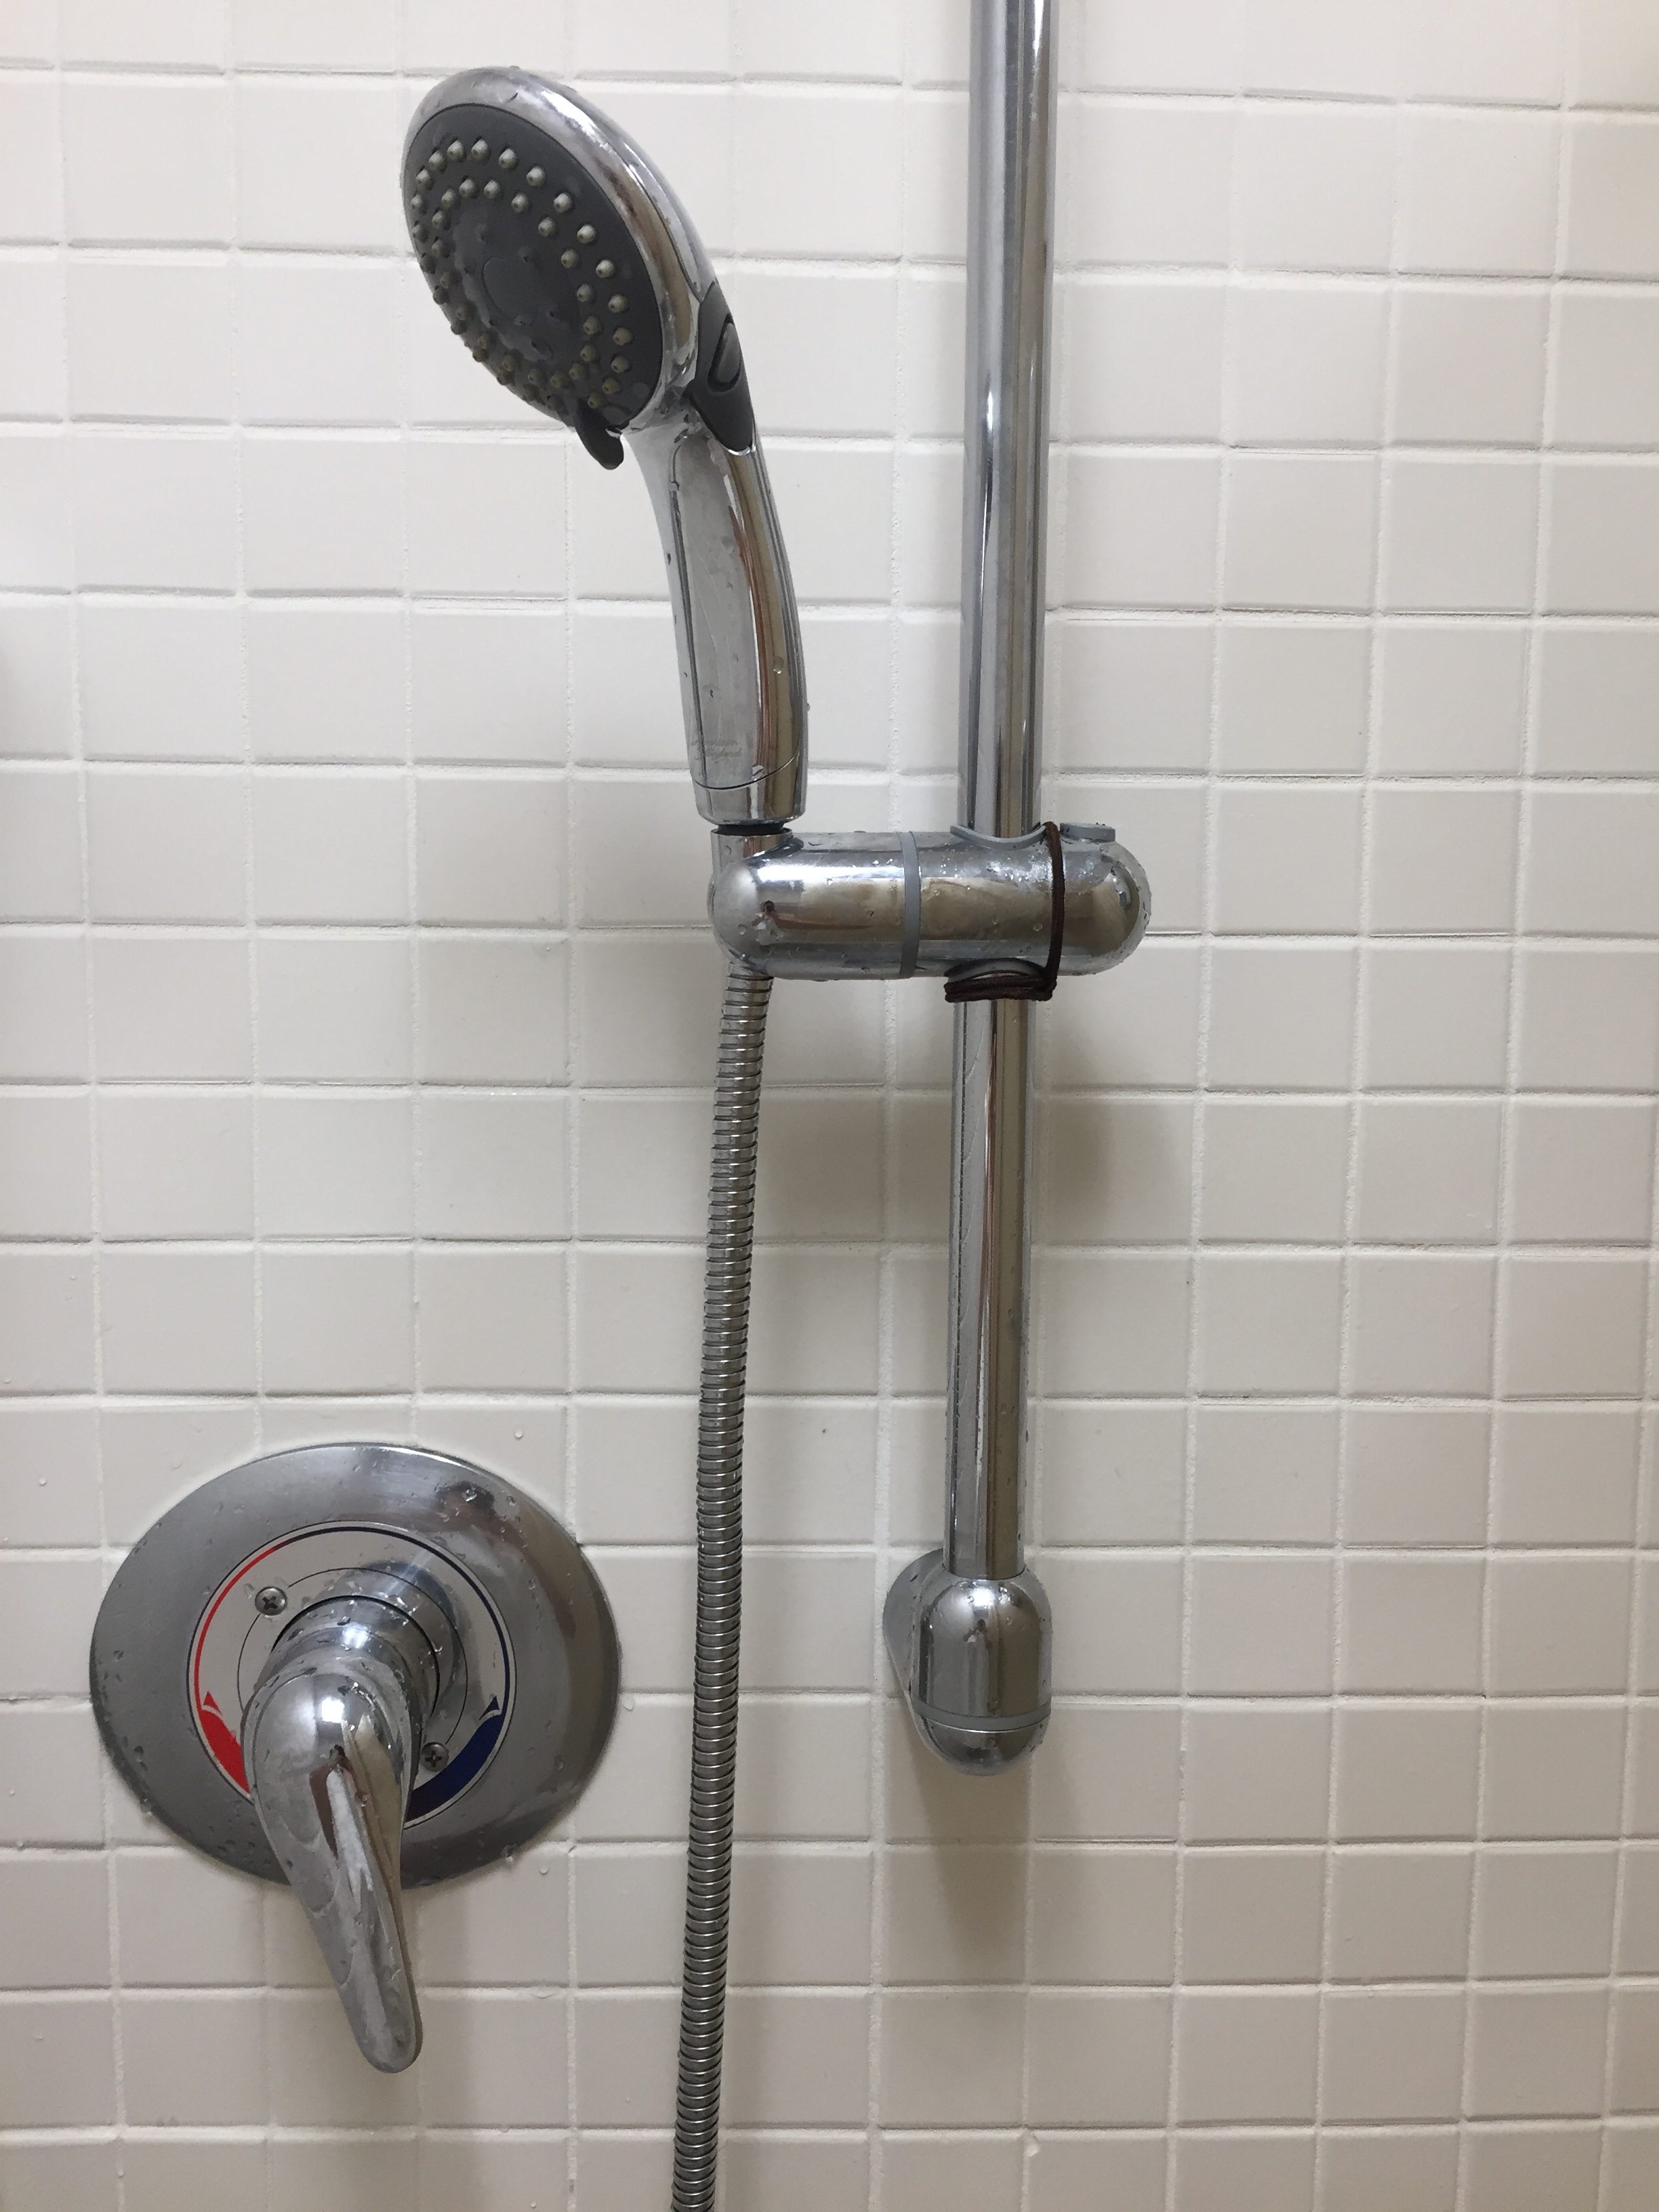 Shower hose on a sliding support pole.